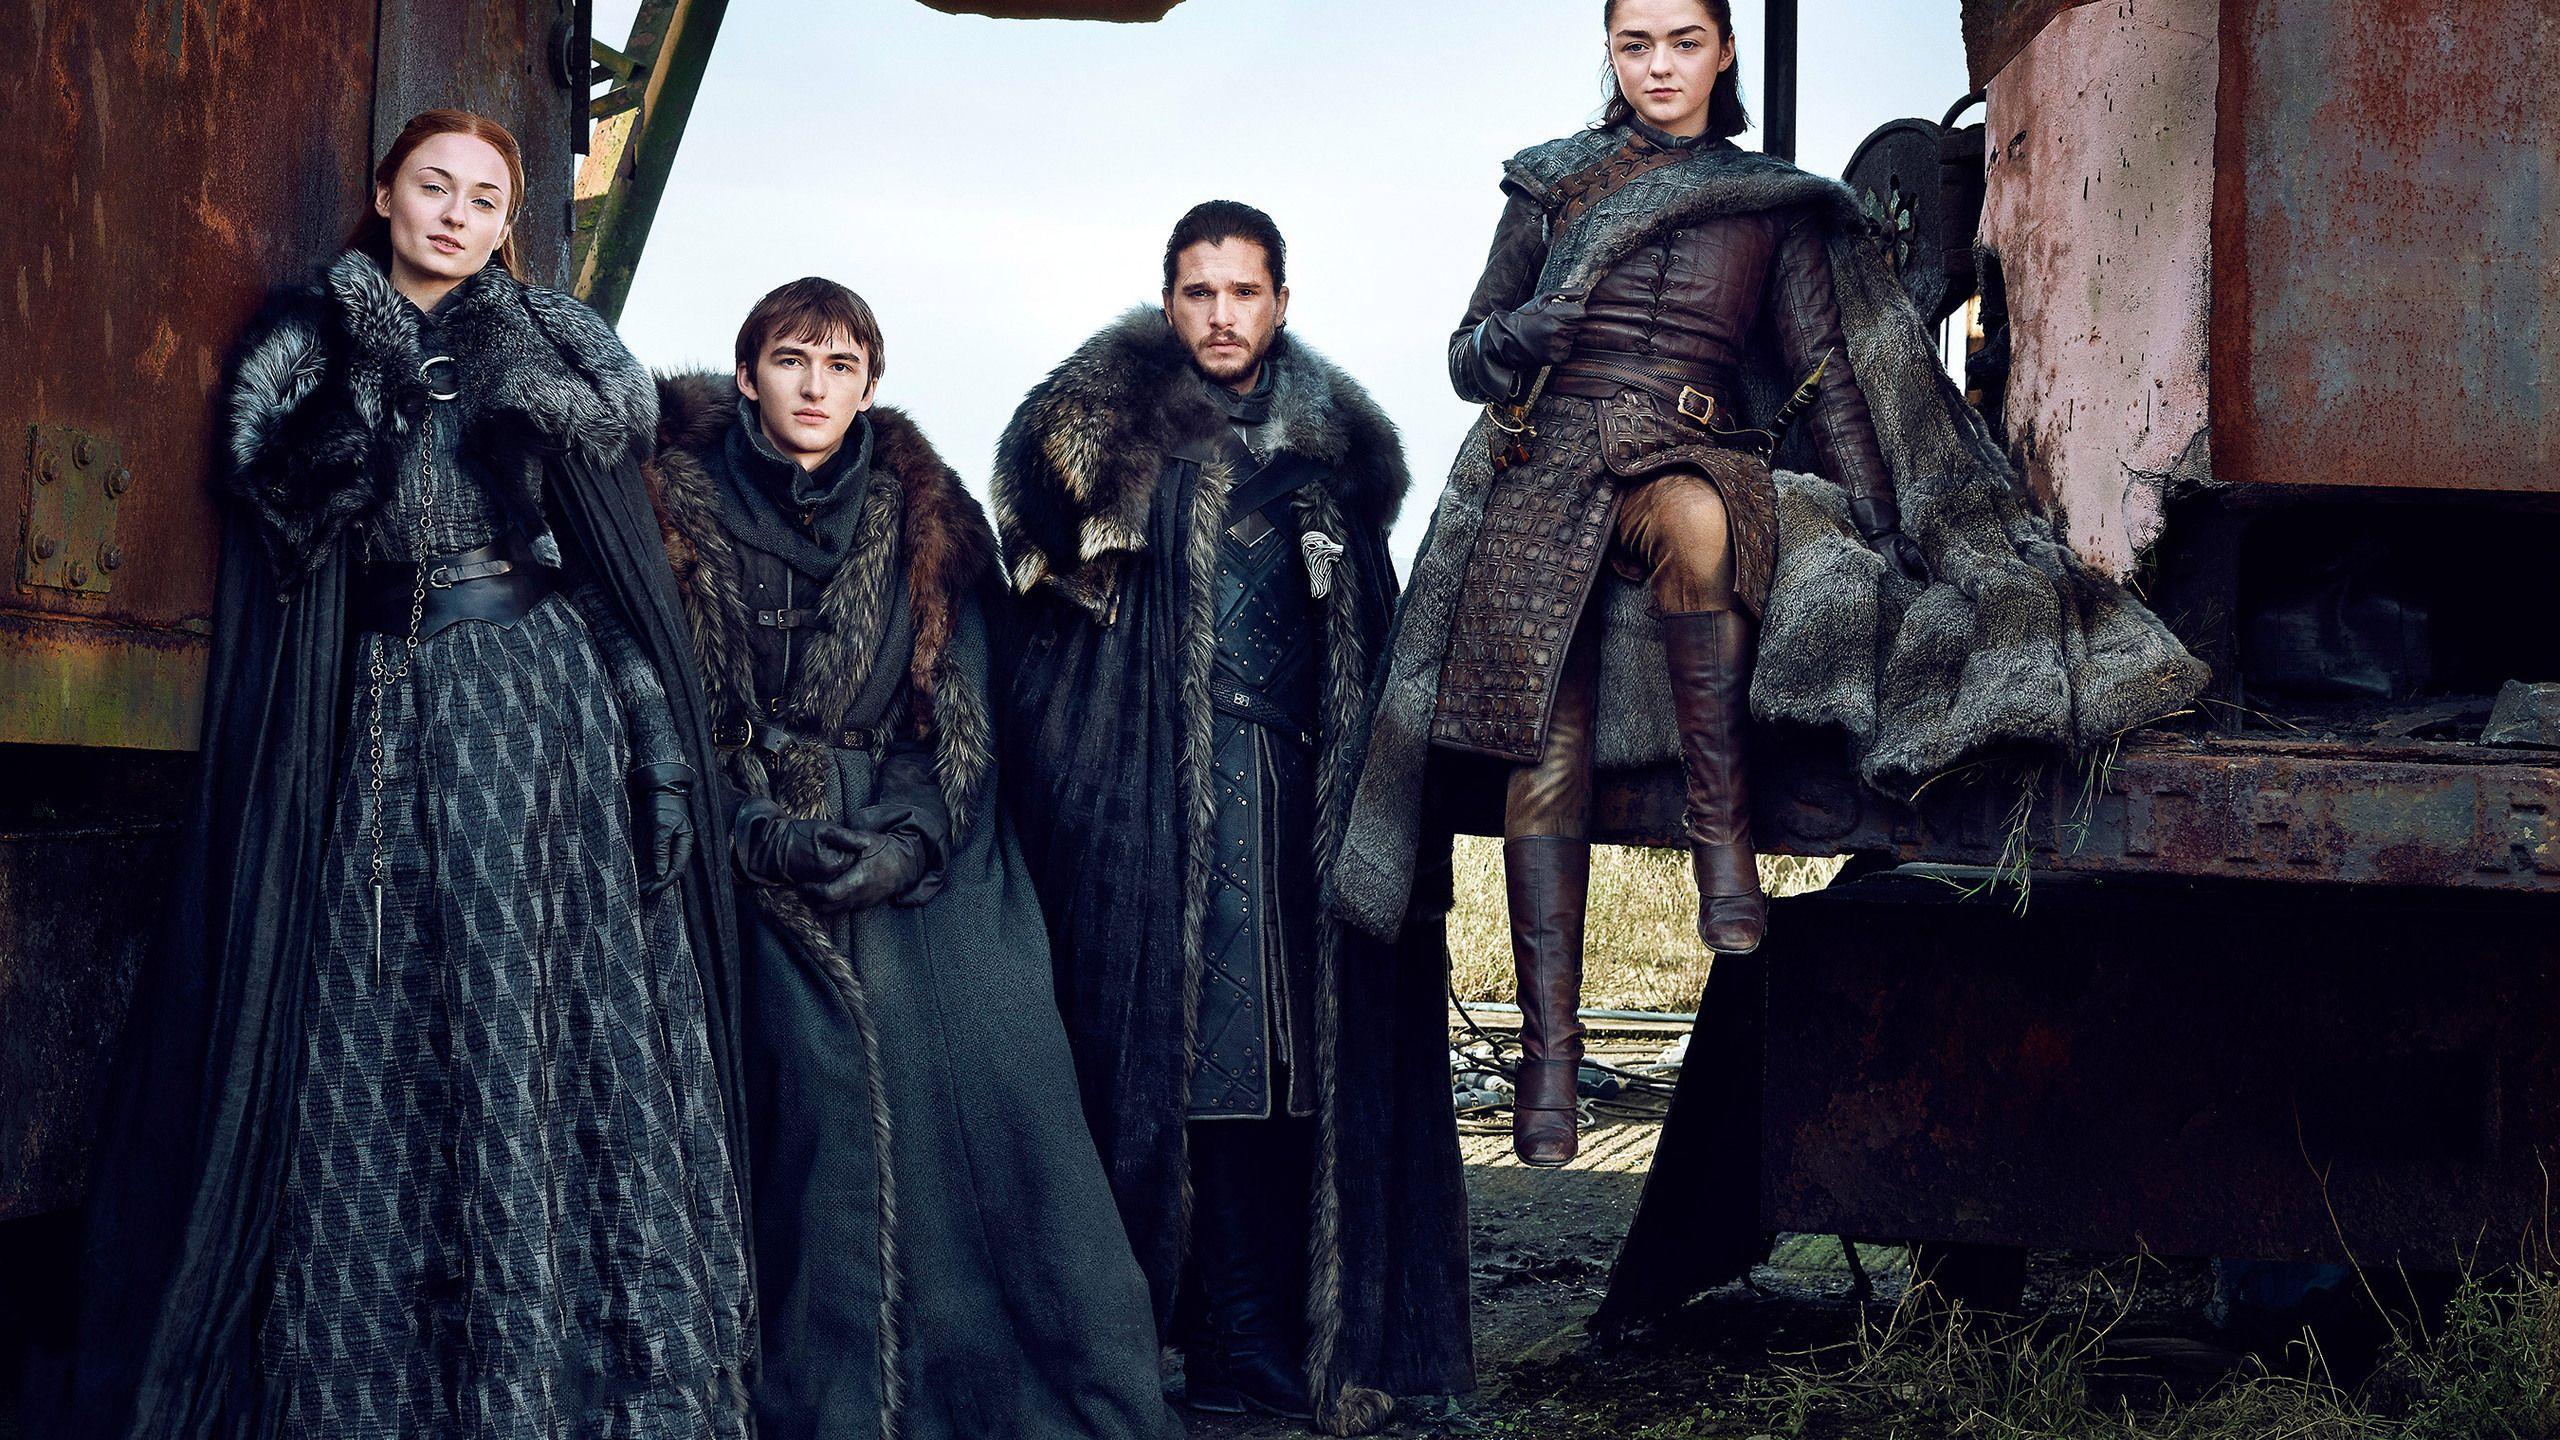 Download Game Of Thrones Season 7 Bran Stark Sansa Stark Jon Snow